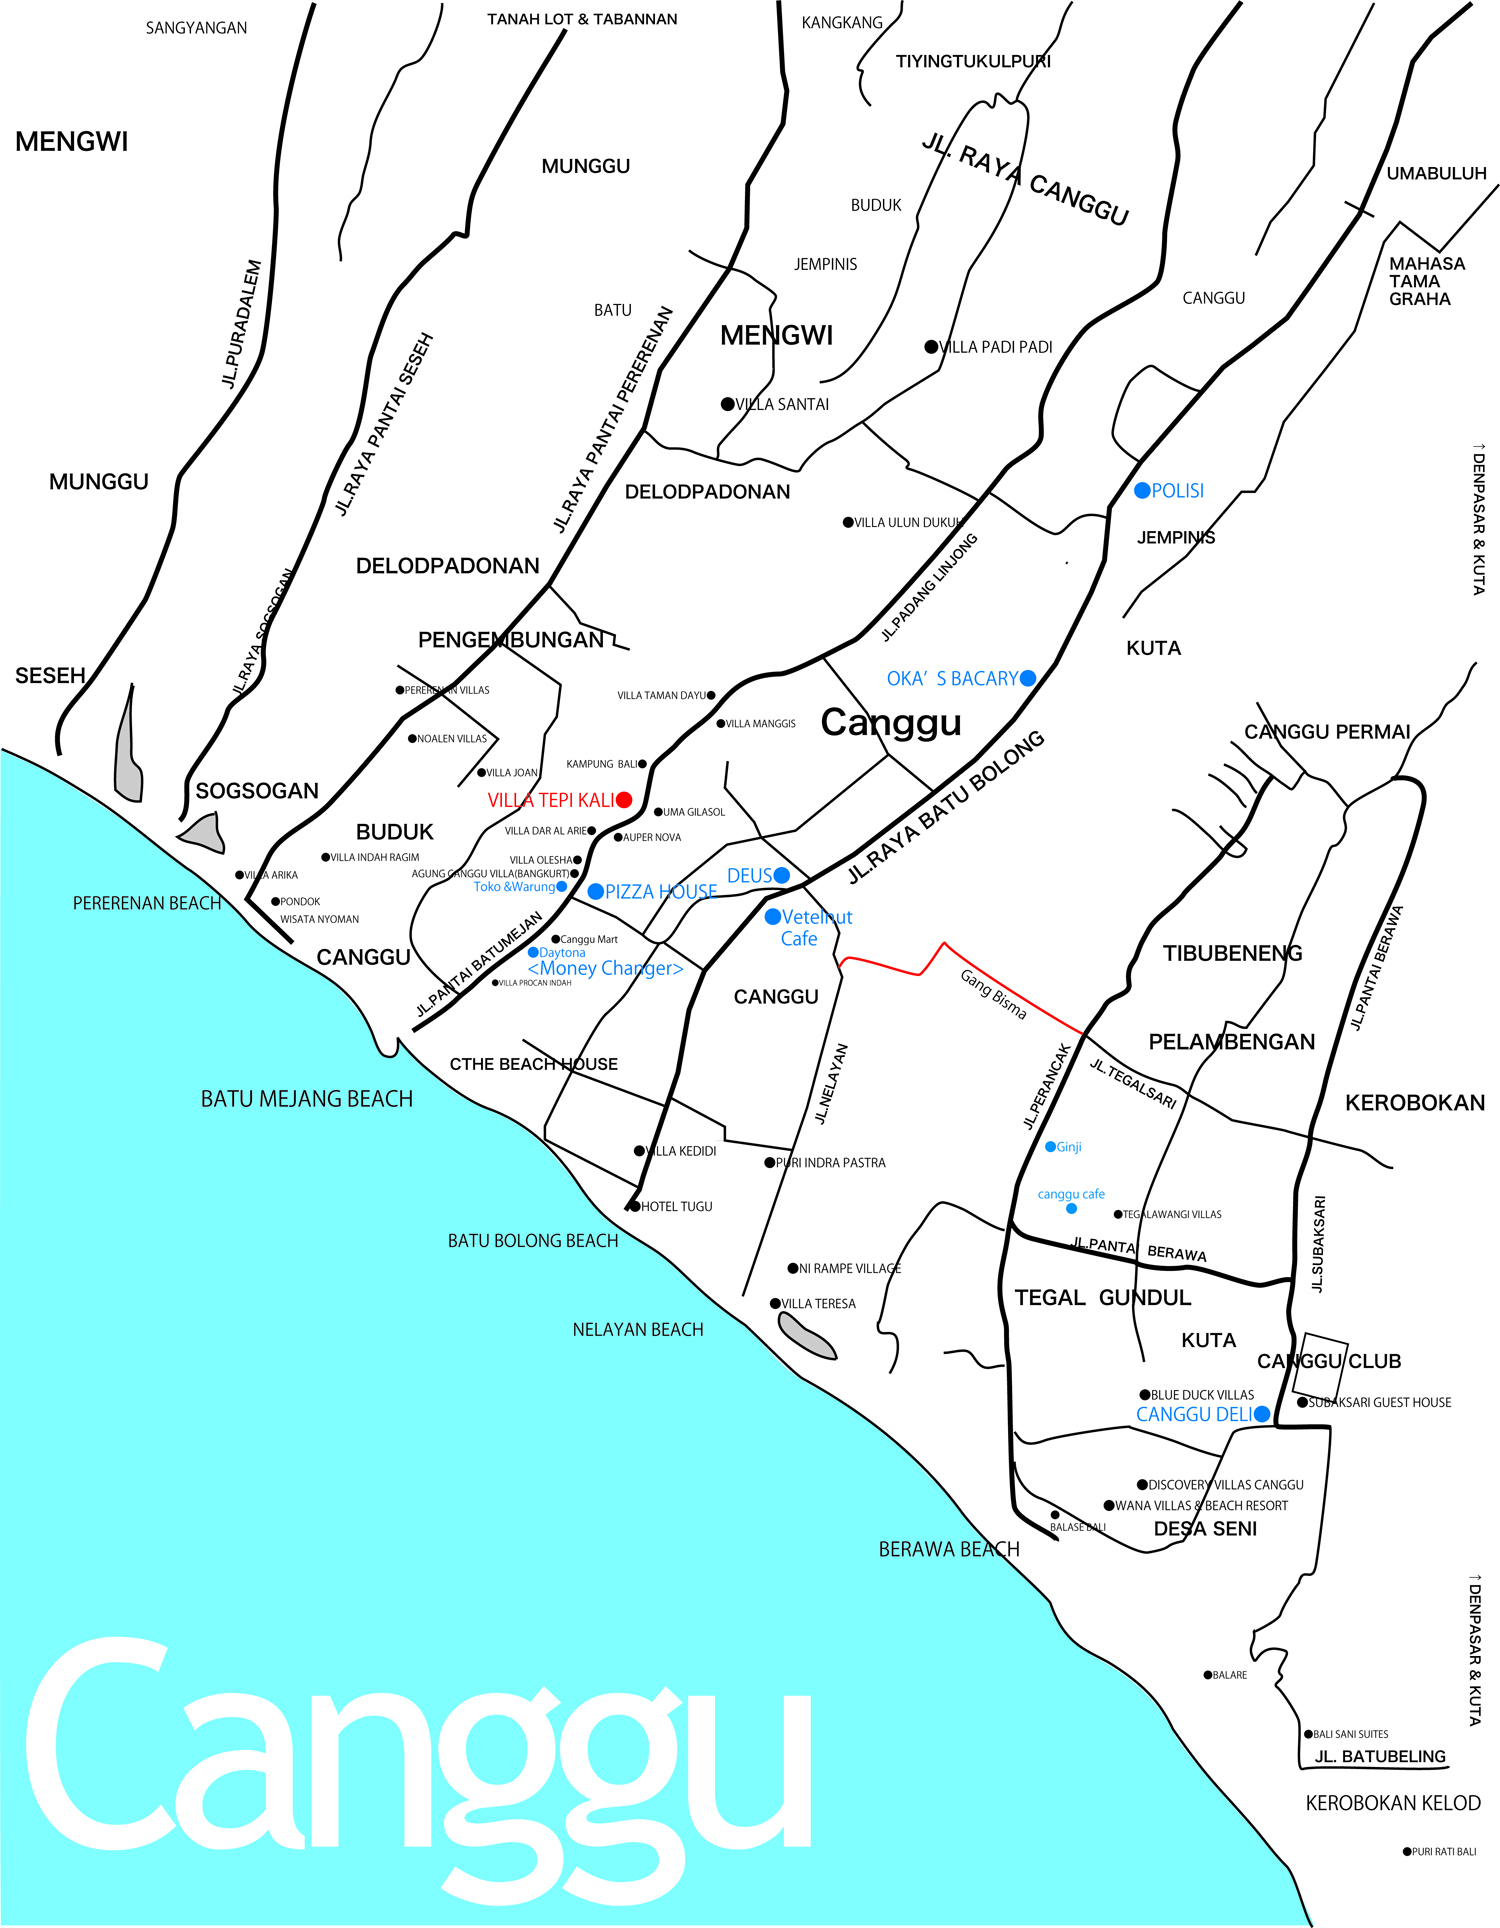 CANGGU AREA MAP / Villa Tepi Kali